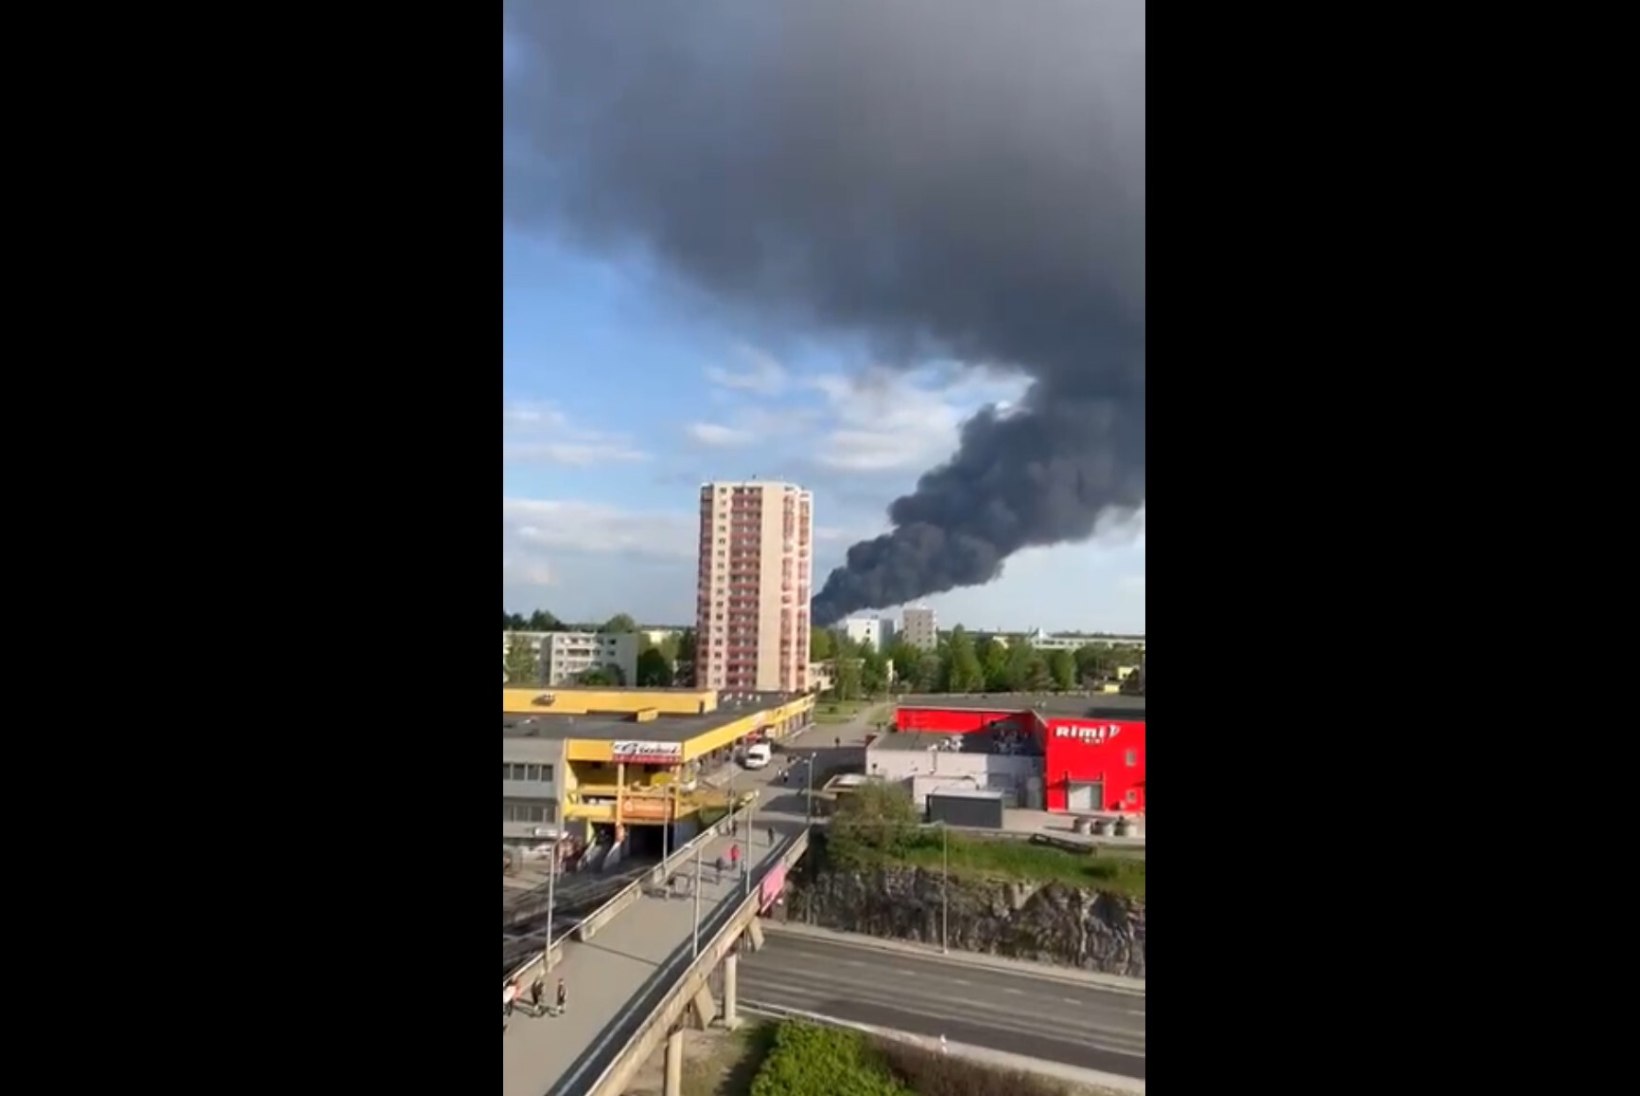 FOTOD JA VIDEOD | Suur-Sõjamäel põles ohtlike jäätmete kogumiskeskus. Keskkonnaamet alustas keskkonna saastamise tõttu kriminaalmenetlust